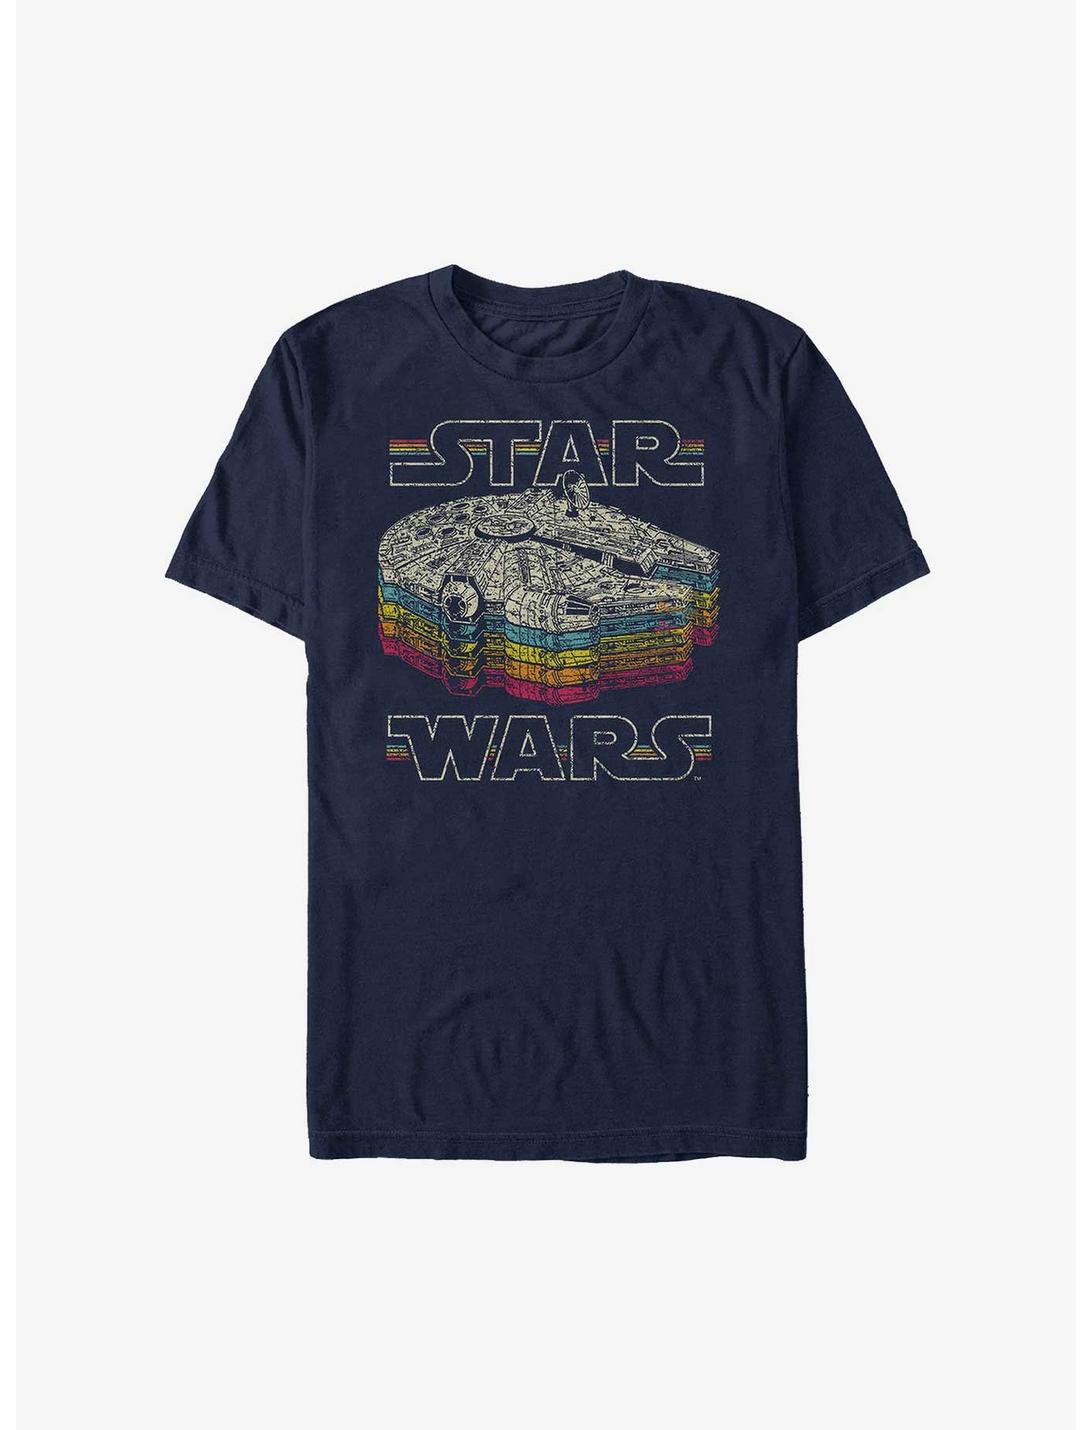 Star Wars Retro Color T-Shirt, NAVY, hi-res